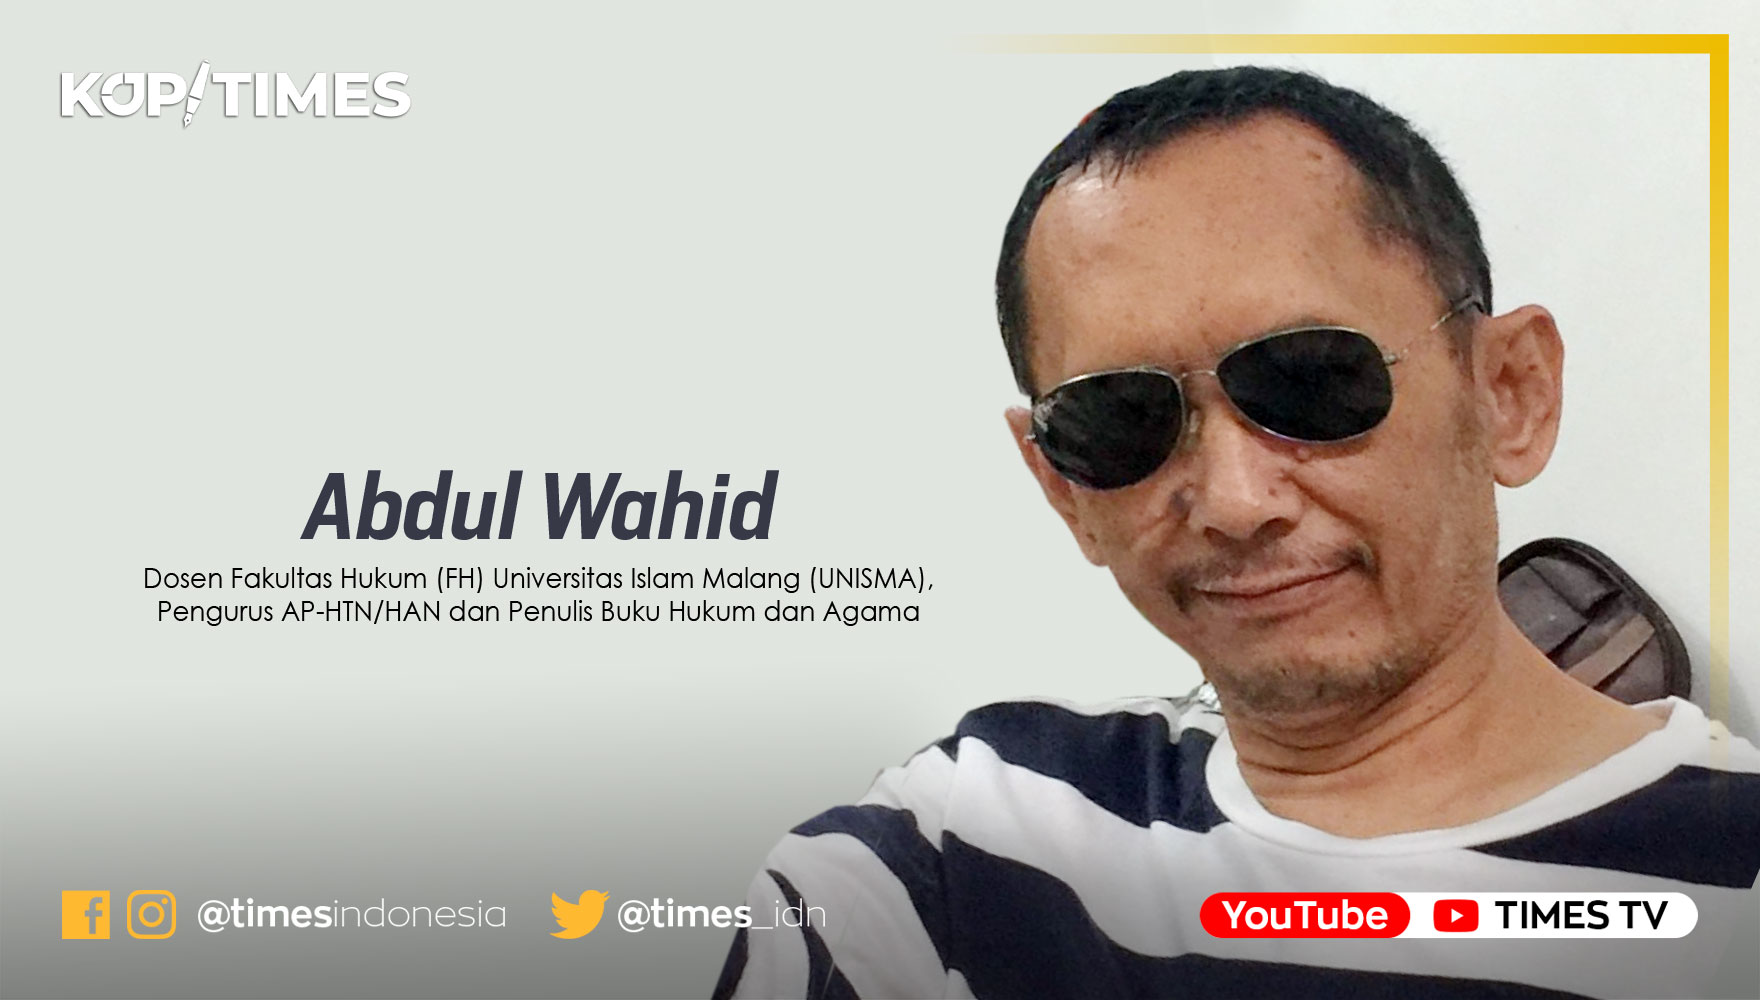 Abdul Wahid, Dosen Fakultas Hukum (FH) Universitas Islam Malang (UNISMA) dan pengurus AP-HTN/HAN dan penulis sejumlah buku hukum dan agama.